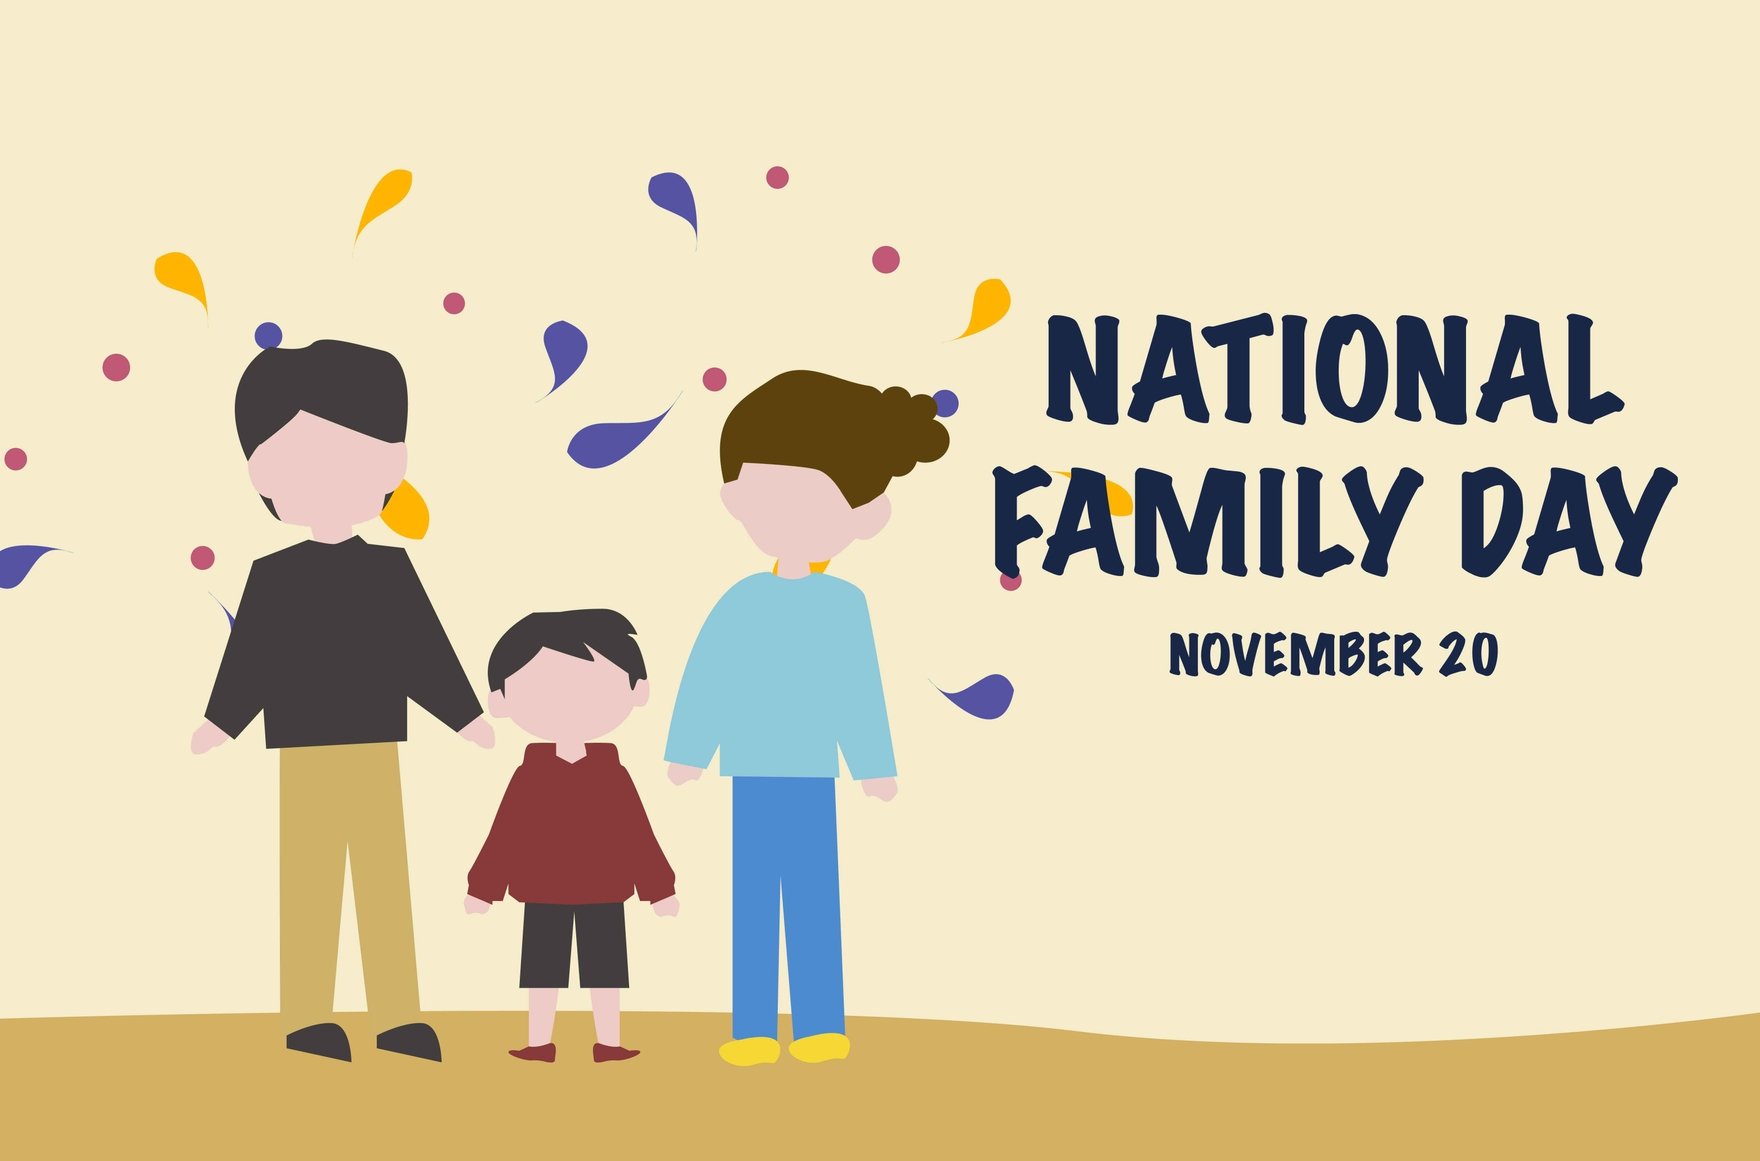 National Family Day Banner in Illustrator, EPS, SVG, JPG, PNG